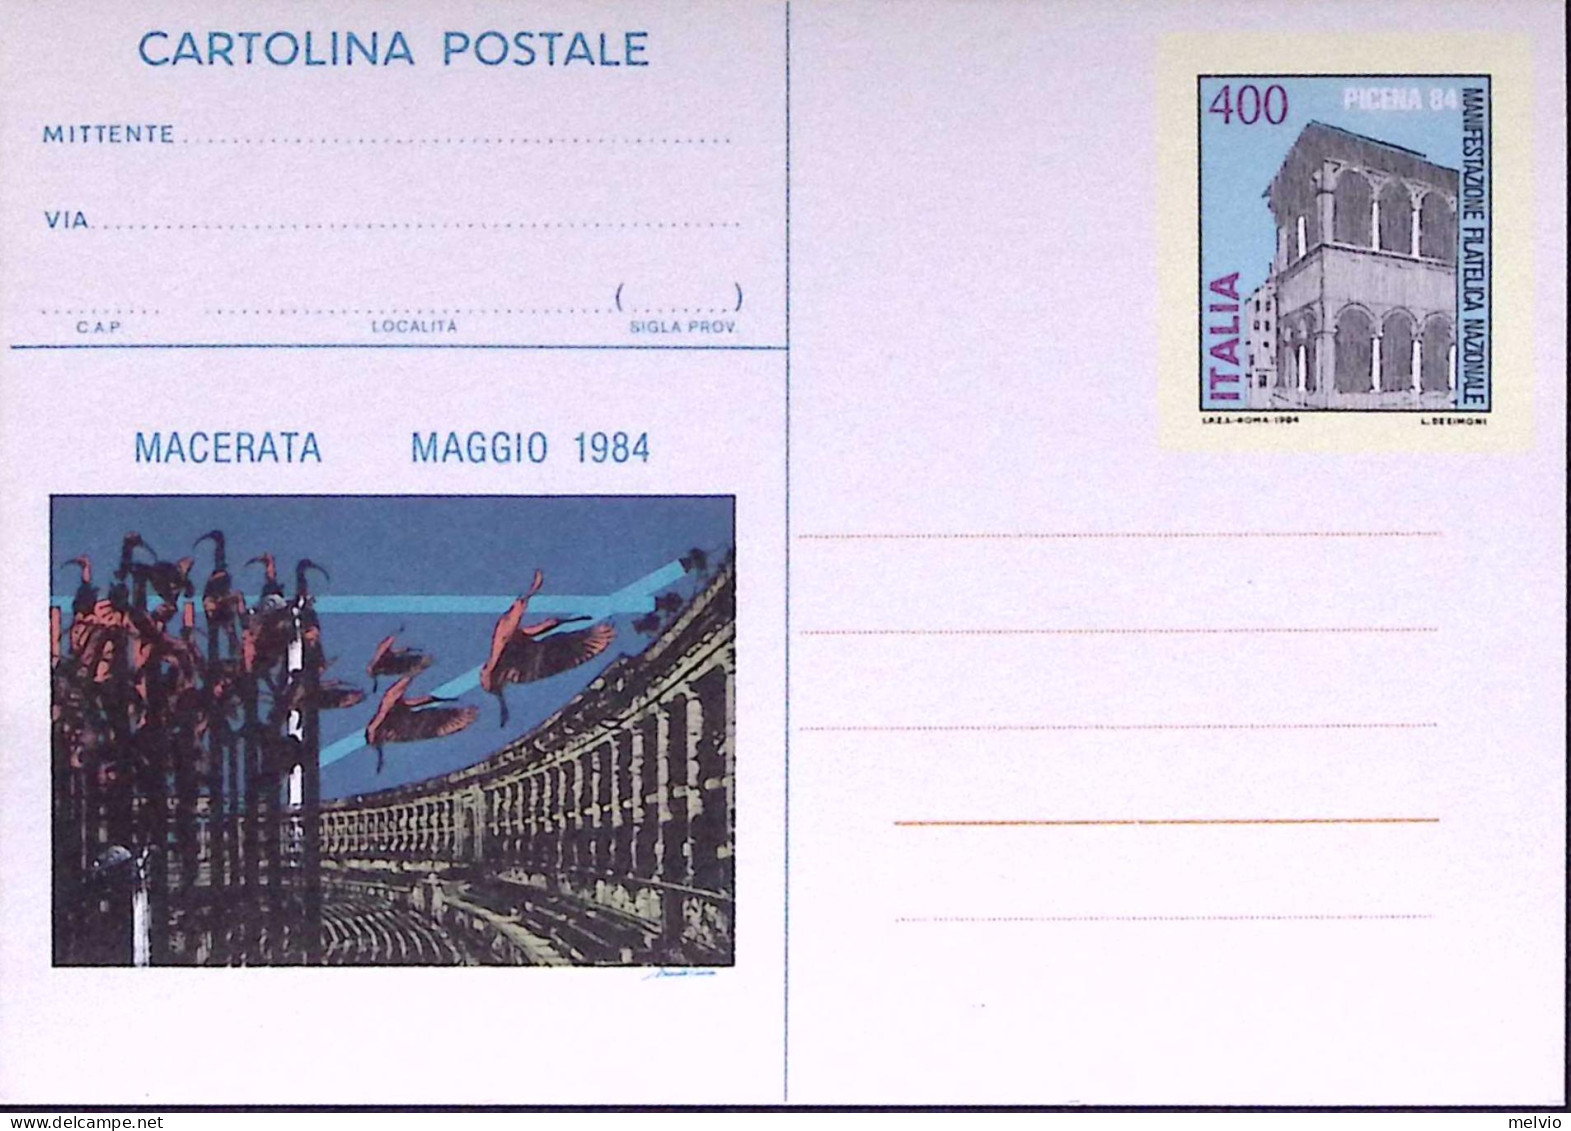 1984-Cartolina Postale Lire 400 Picena 30924 Nuova - Interi Postali